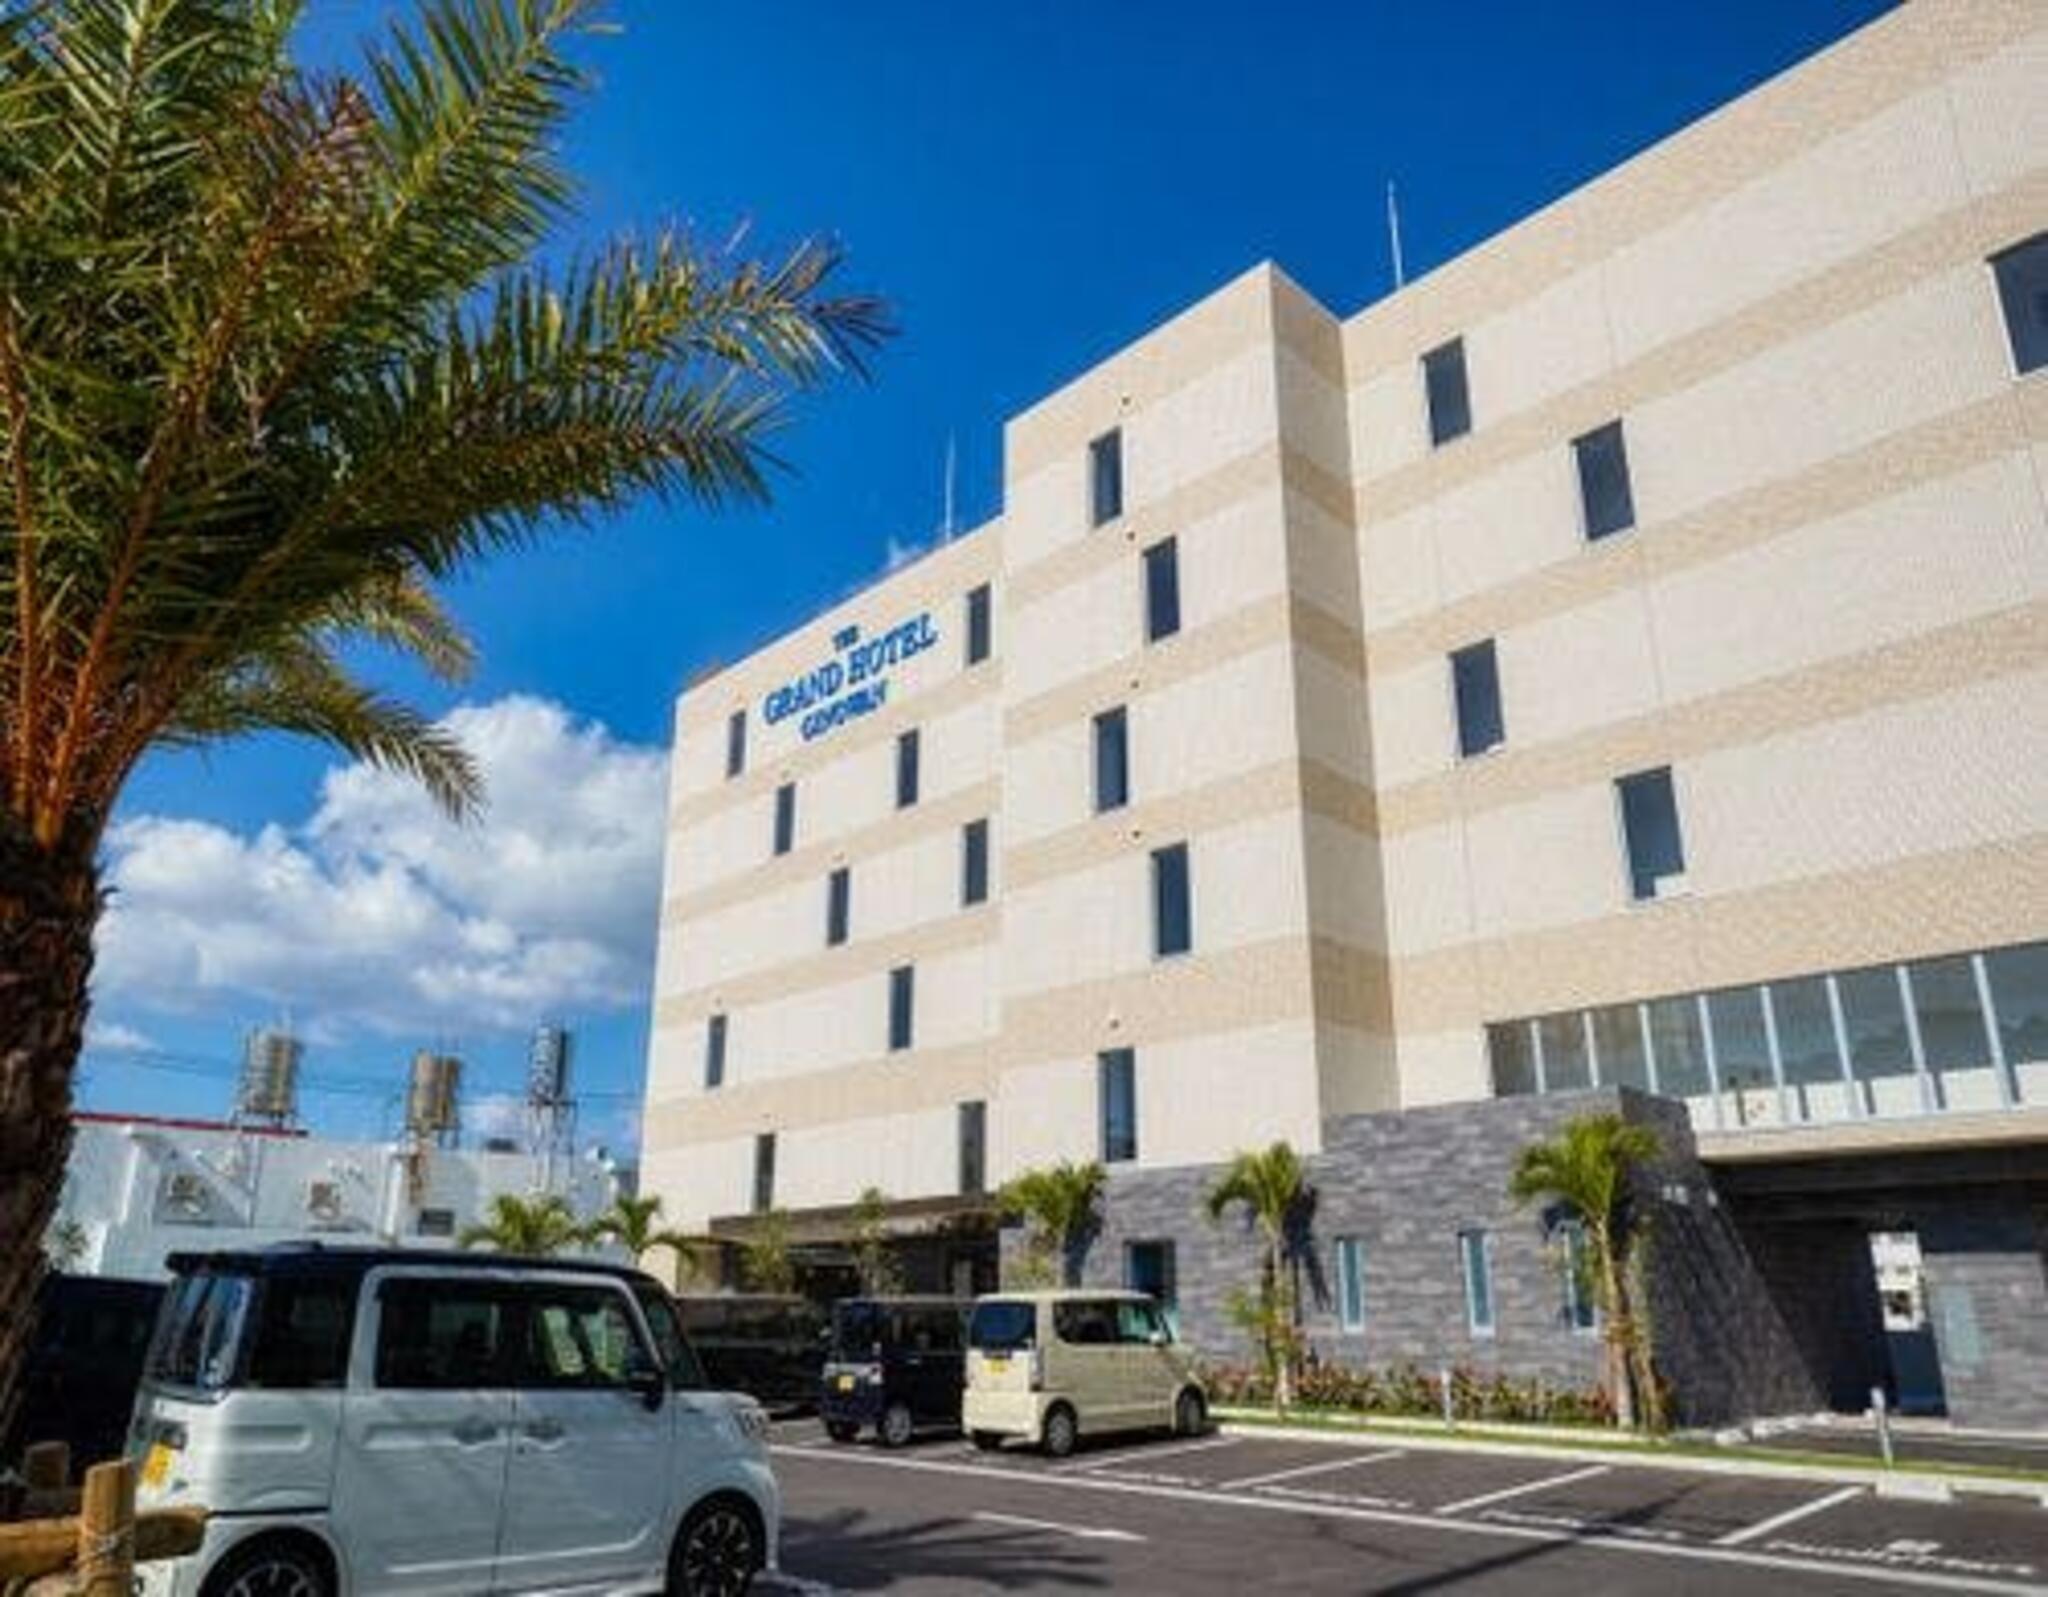 The Grand Hotel Ginowan オーシャンビュー&シティビュー 沖縄のプレミアムビジネスホテルの代表写真1